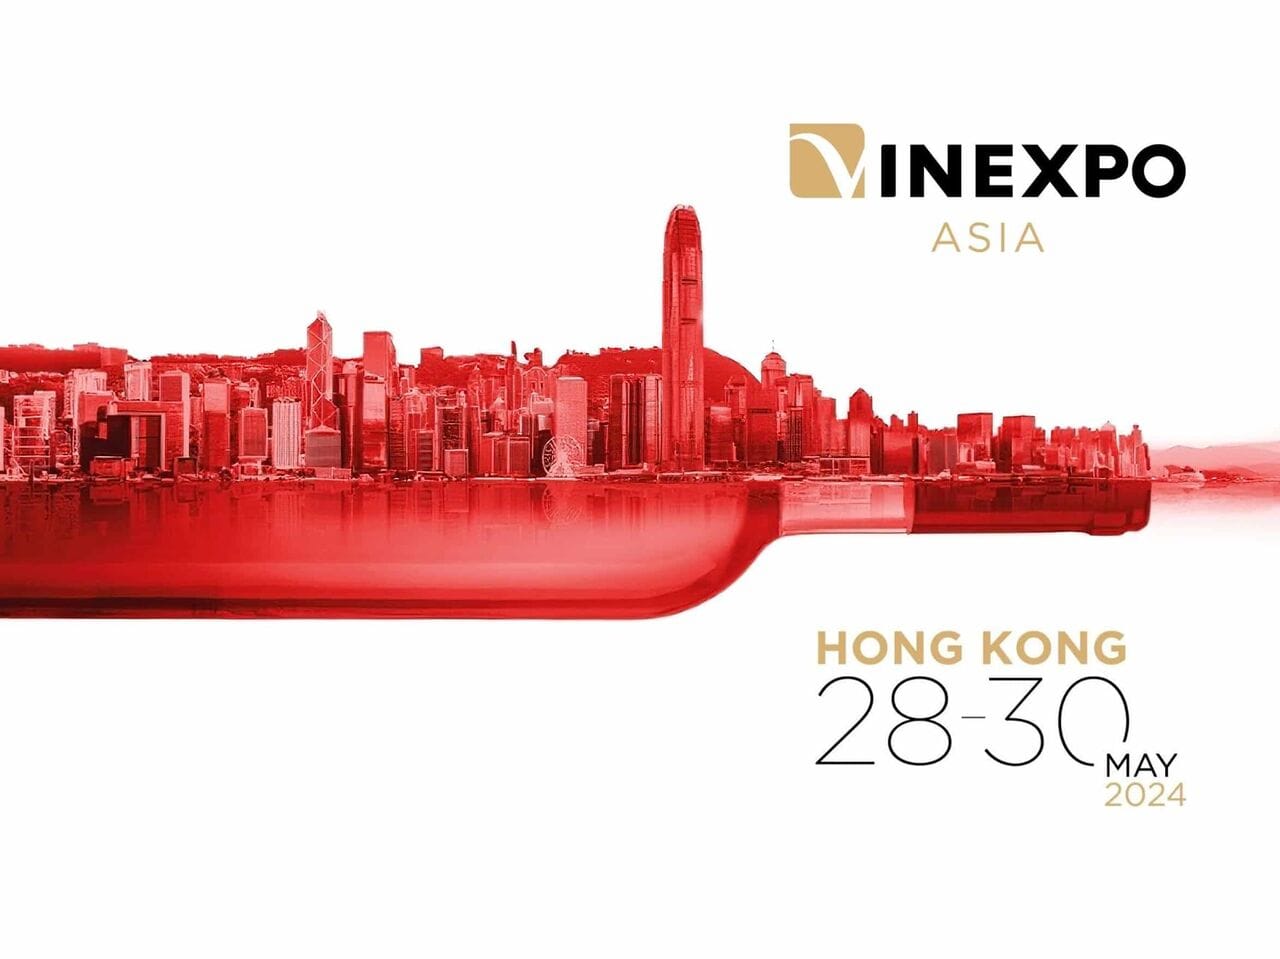 De retour à Hong Kong, Vinexpo Asia propose un programme unique et prestigieux de masterclasses, dégustations, awards et conférences